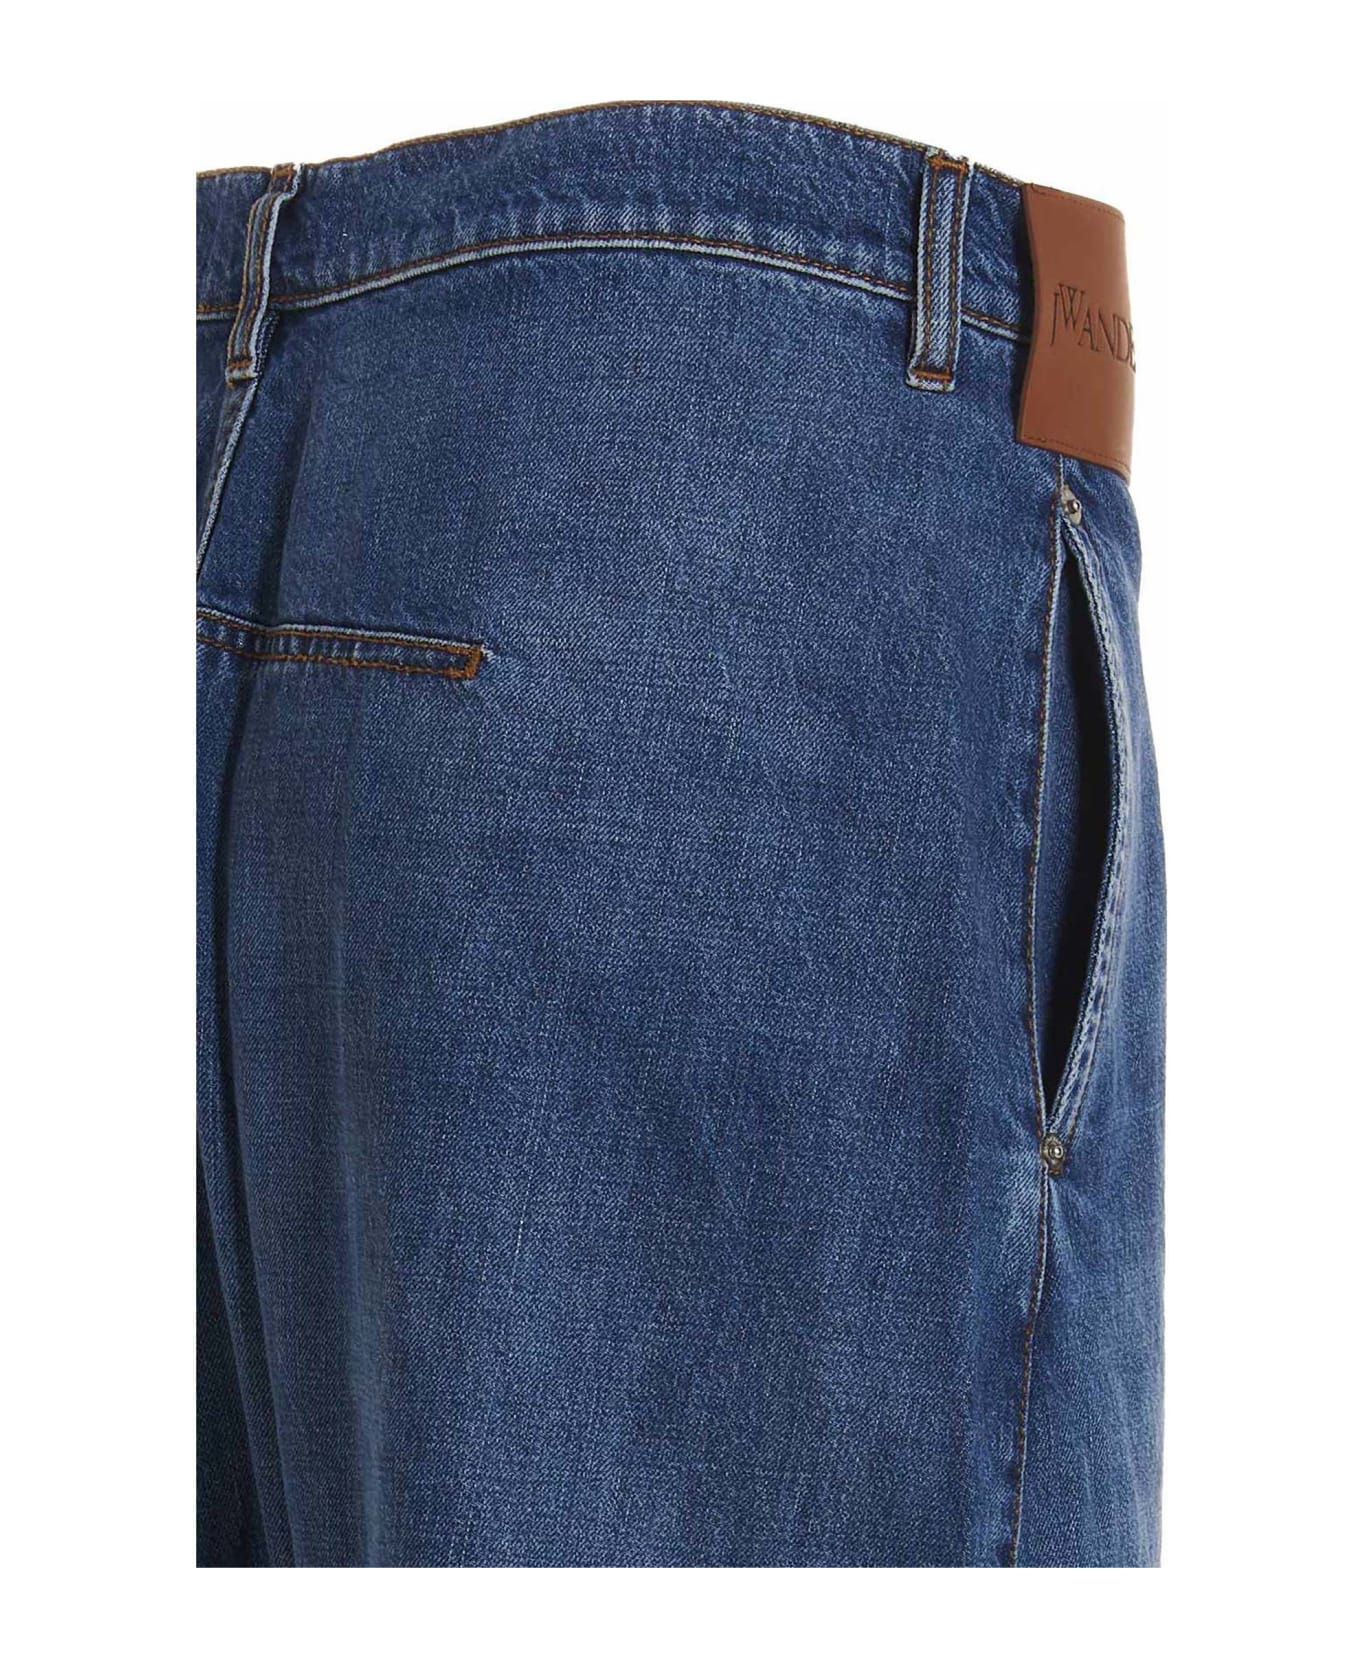 J.W. Anderson Jeans 'twisted Workwear' - Blue